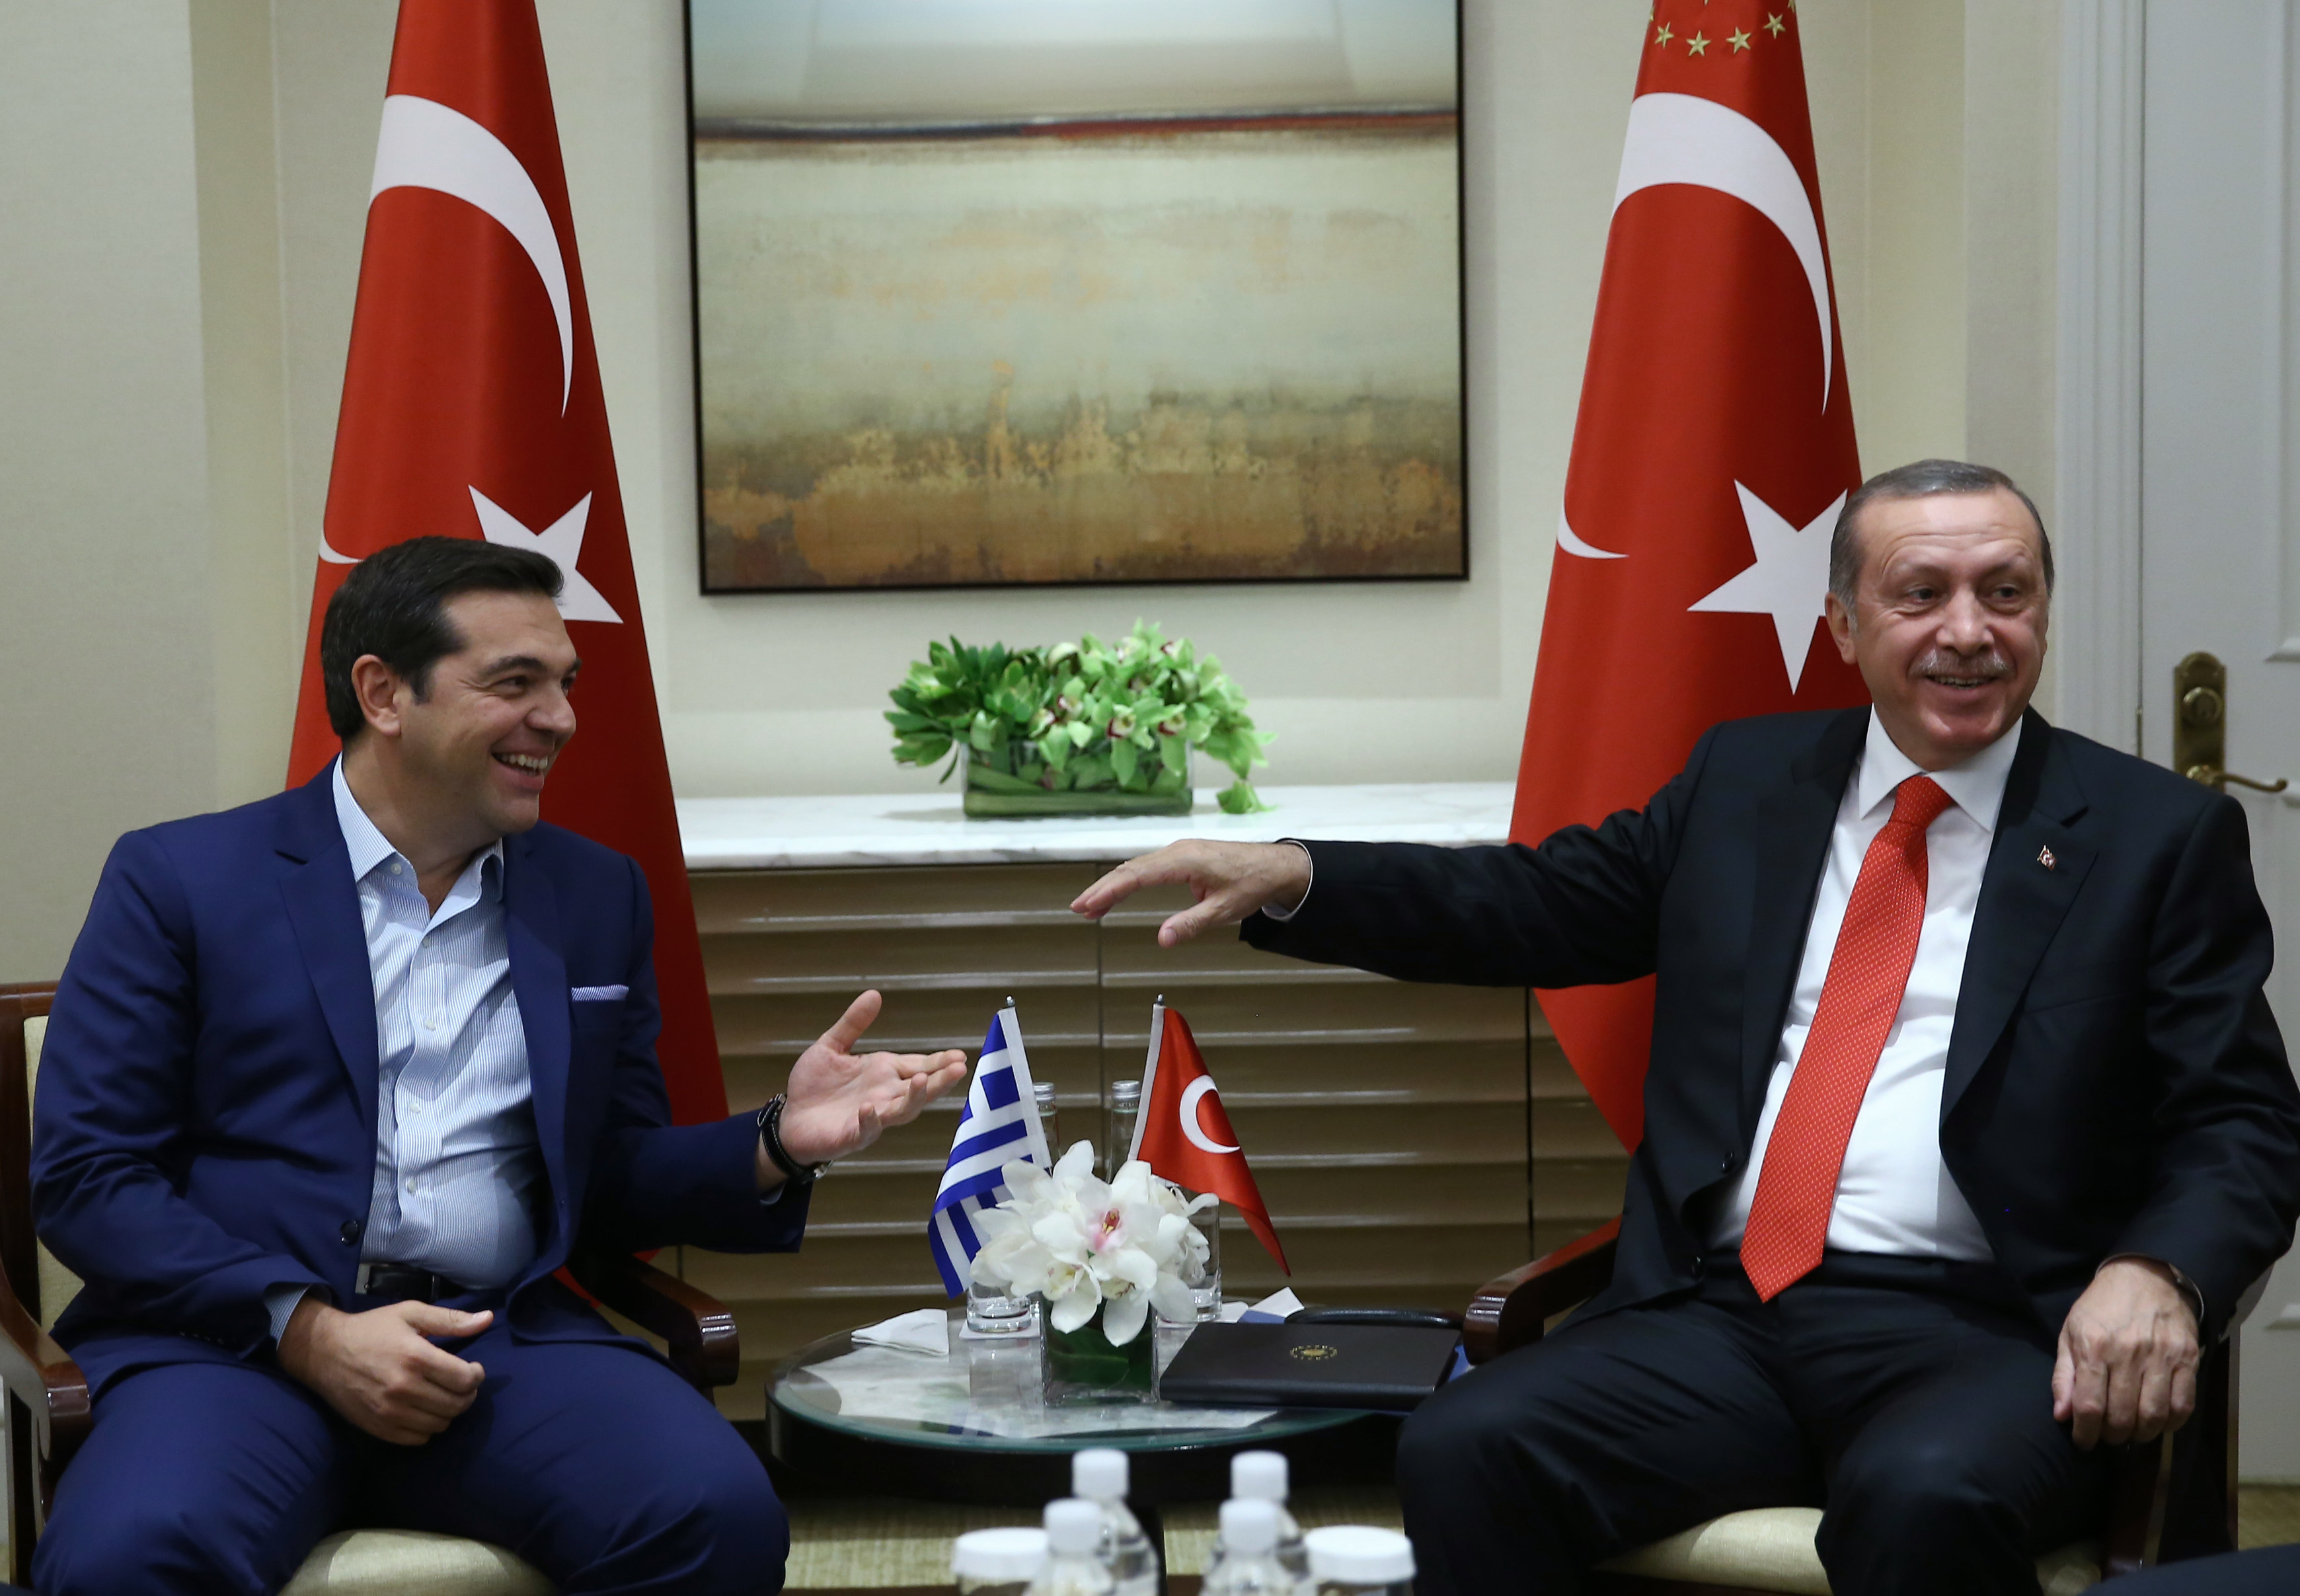 Συνάντηση Τσίπρα – Ερντογάν στο Πεκίνο:  Πλήρη εφαρμογή της Συνθήκης της Λωζάνης επιθυμεί ο τούρκος πρόεδρος